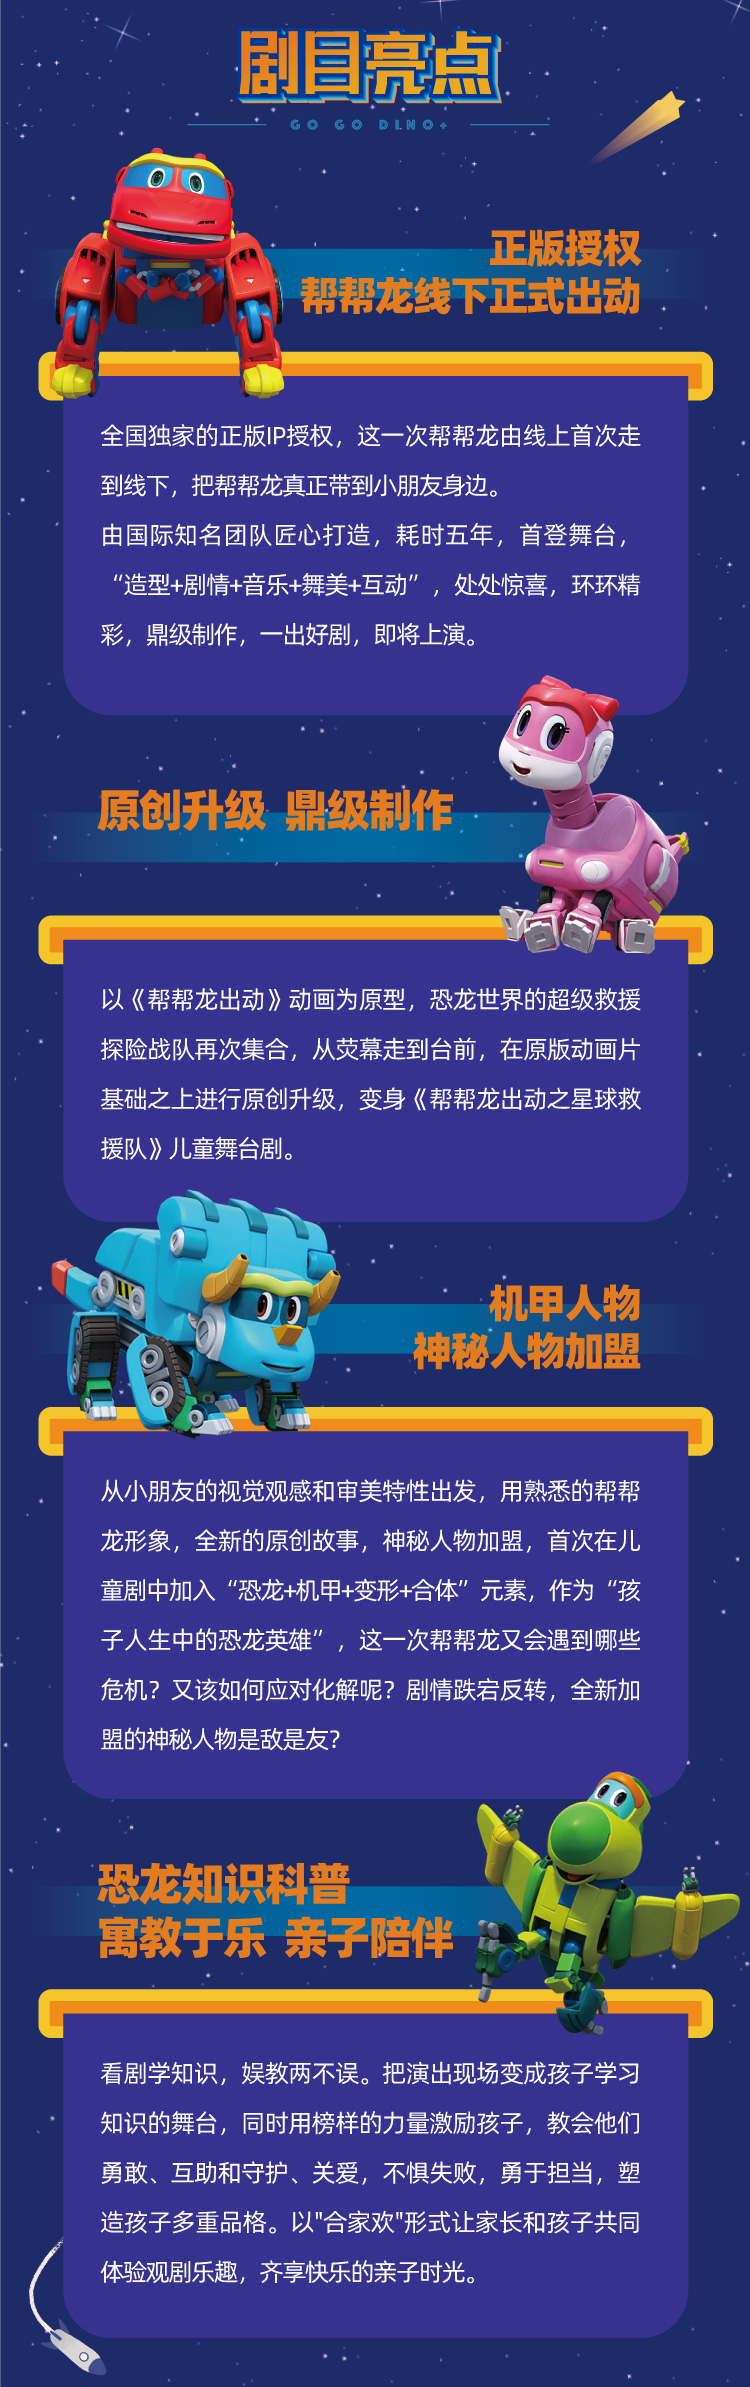 2021恐龙世界科普类儿童剧《帮帮龙出动之星球救援队》-郑州站